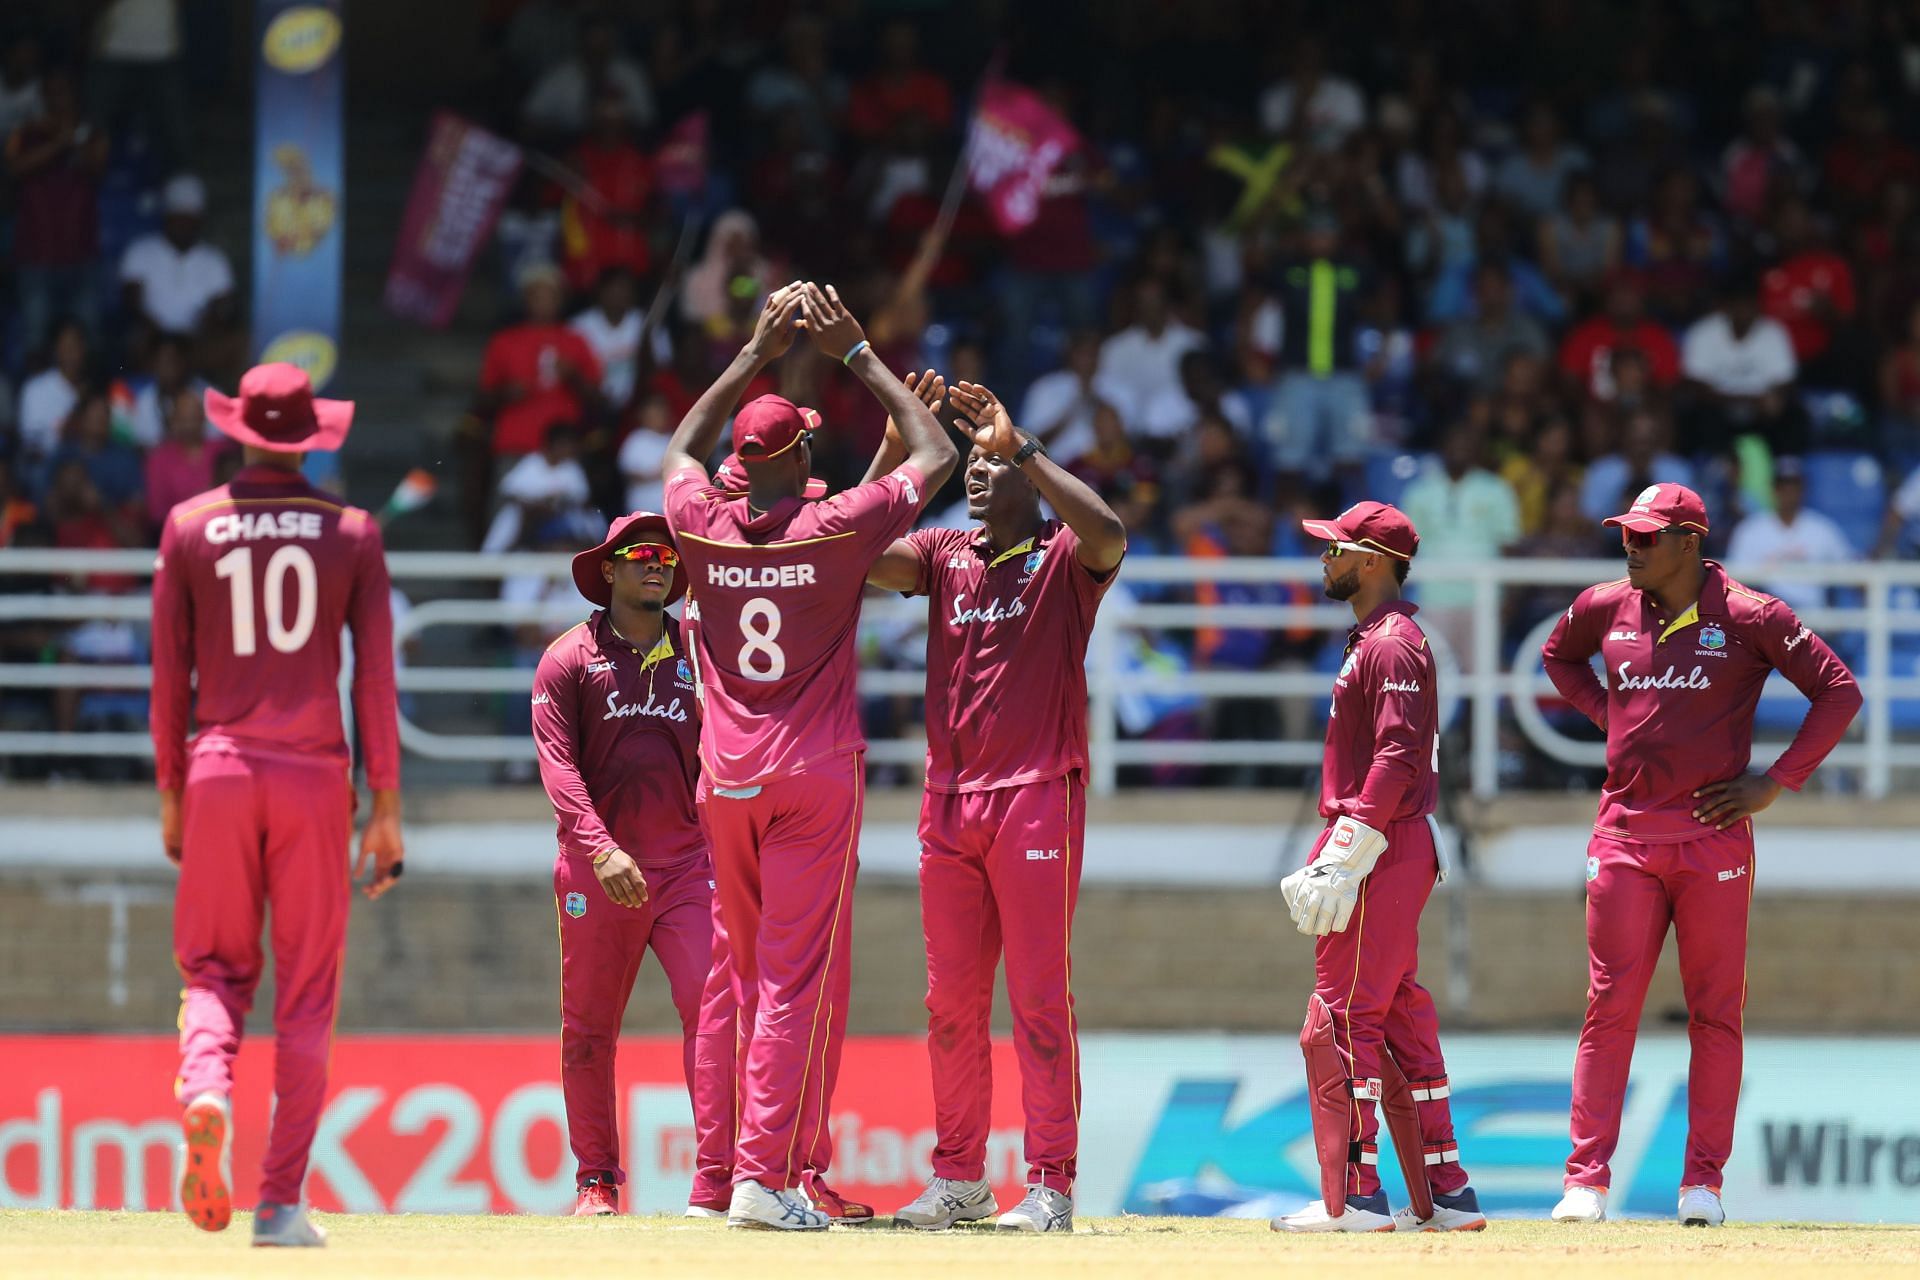 वेस्टइंडीज की टीम तीन एकदिवसीय मैचों की सीरीज खेलेगी